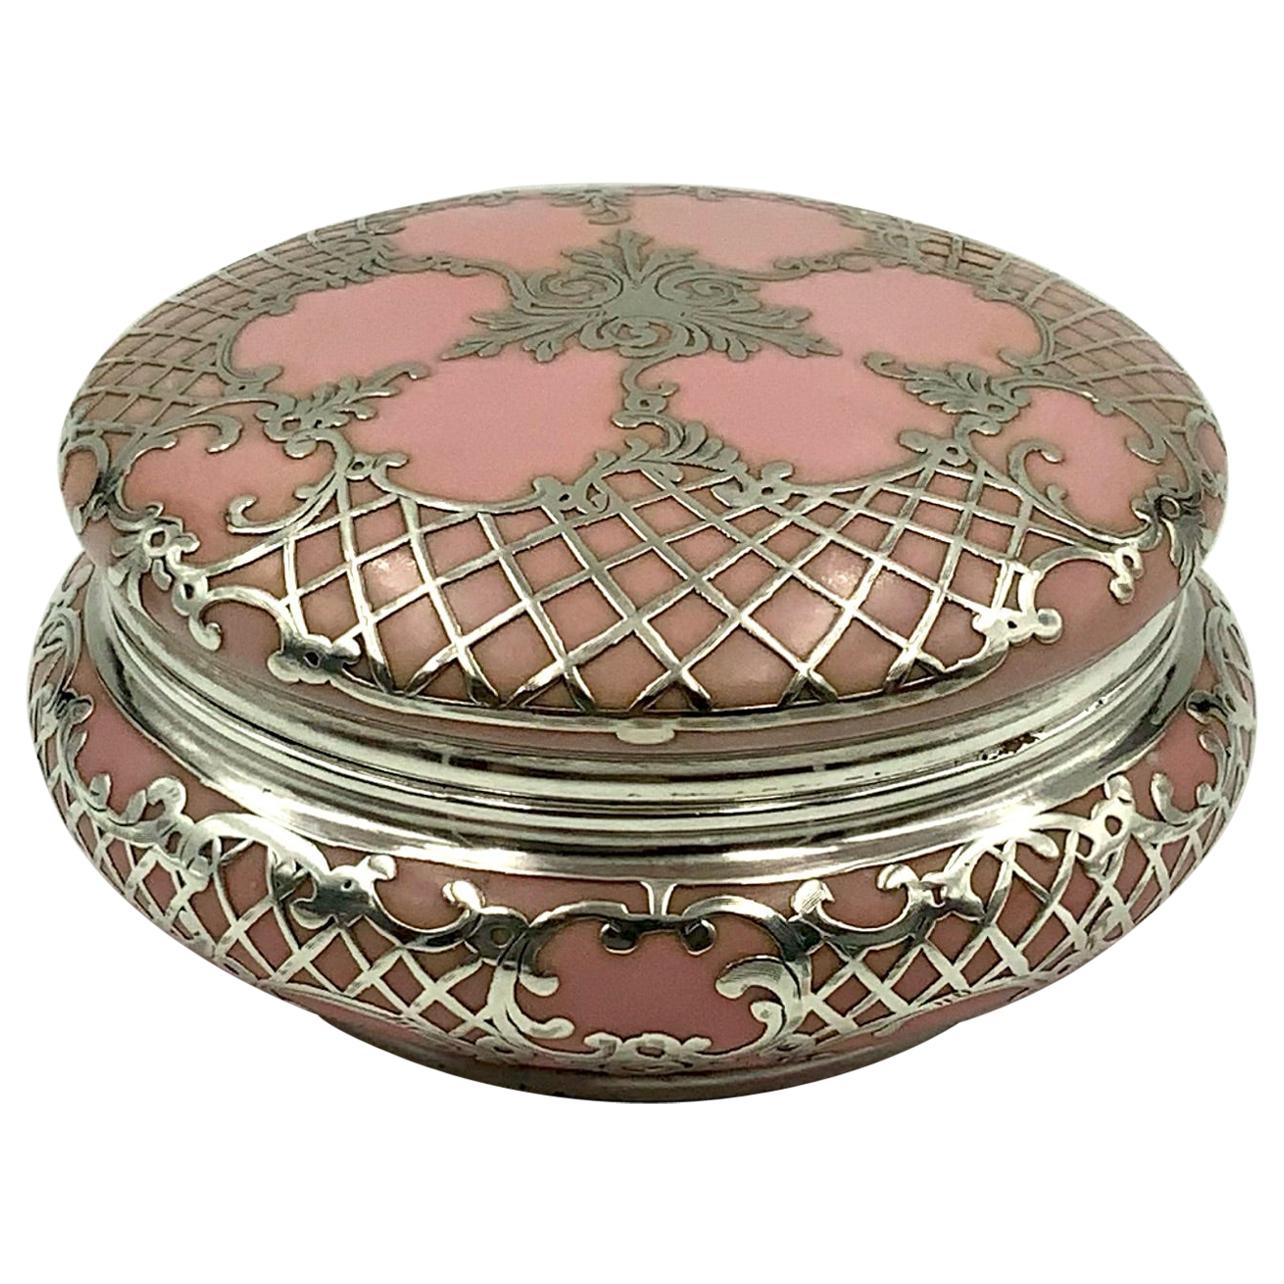 Magnifique boîte à bijoux ou poudrier orné d'un décor de volutes et de treillis en argent sterling sur une jolie porcelaine rose. La marque sur le fond n'est pas lisible.